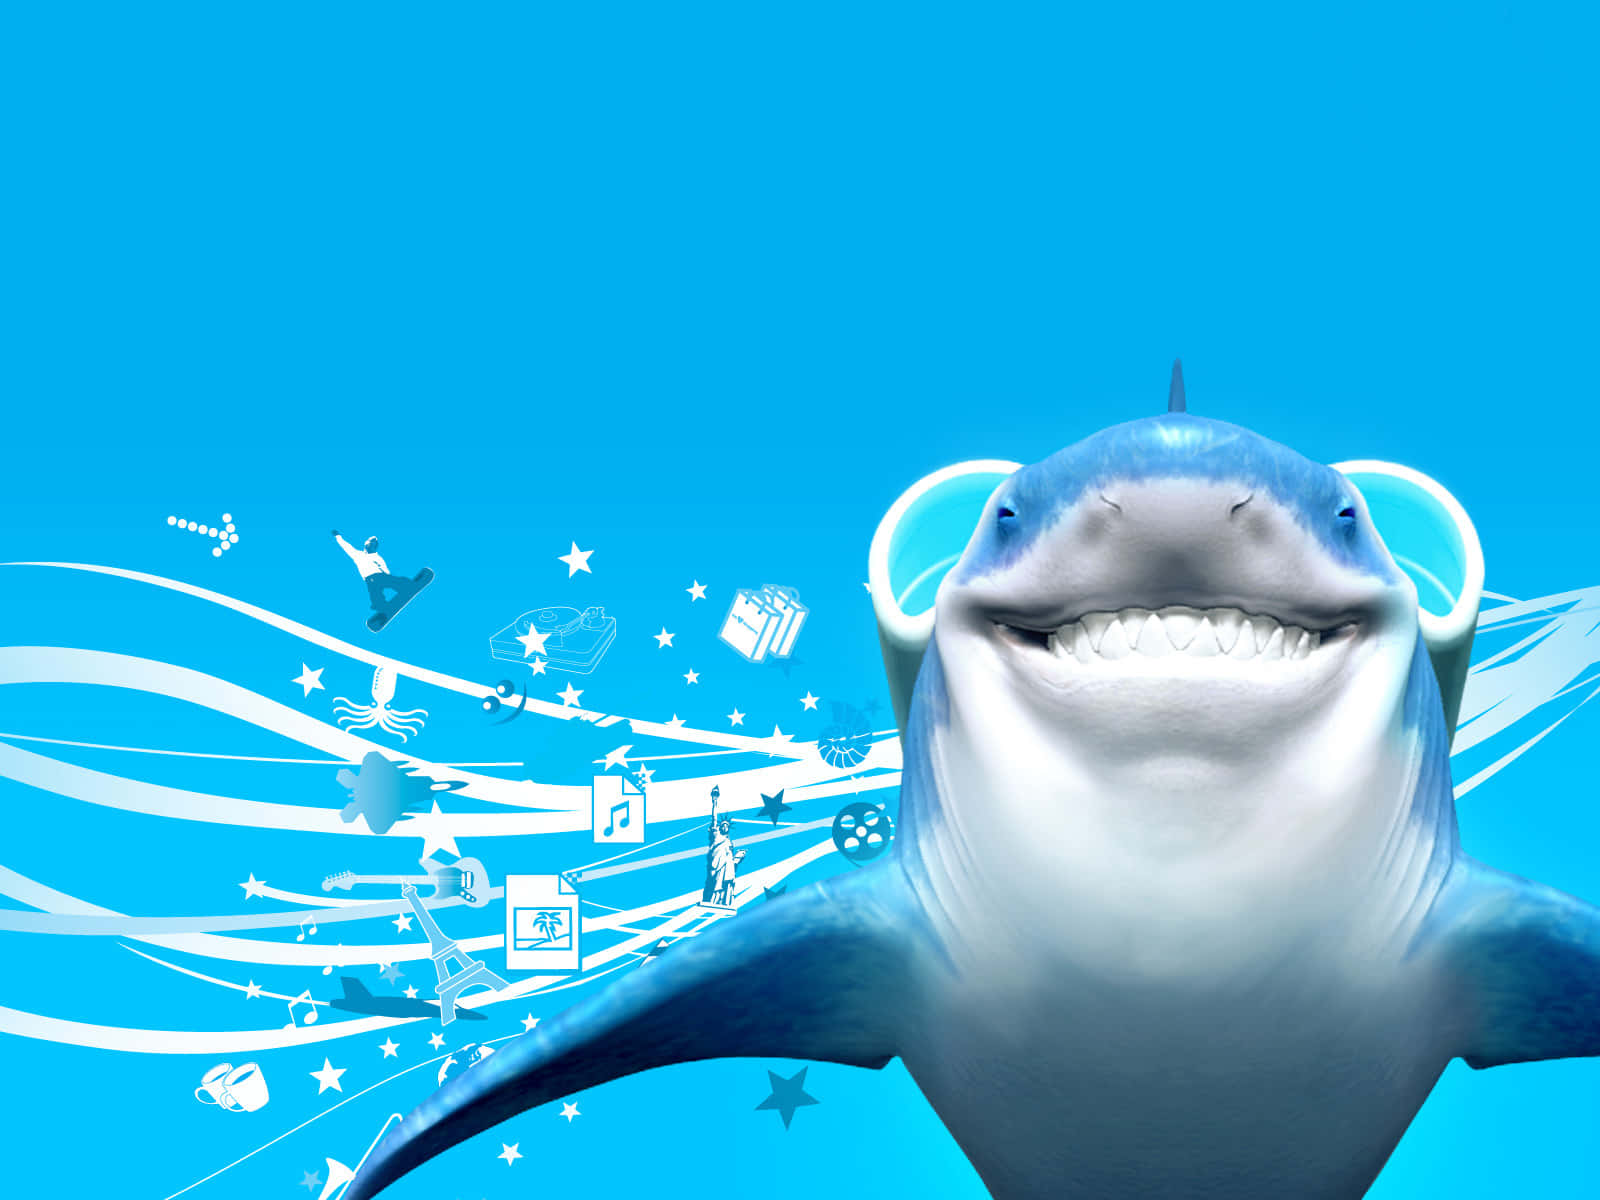 Smiling Shark Blue Aesthetic Wallpaper